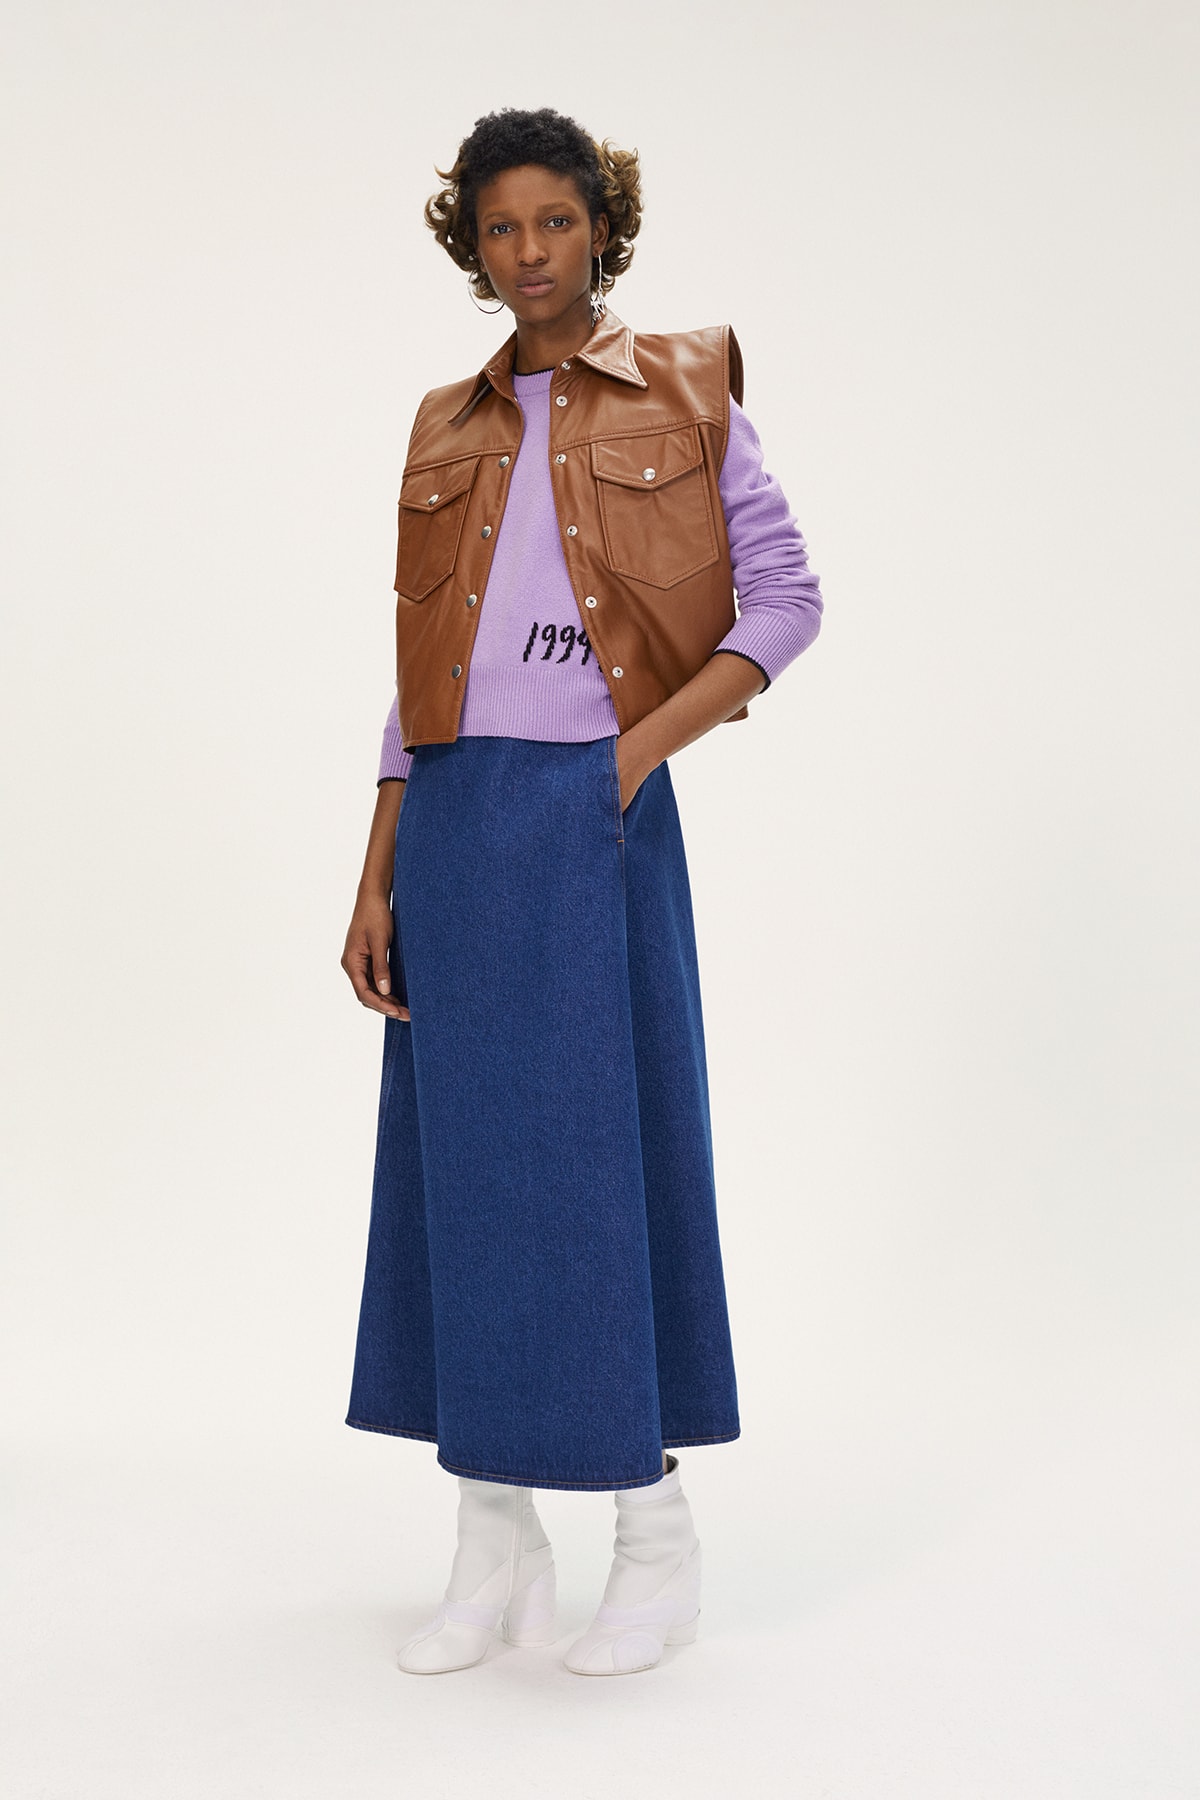 MM6 Maison Margiela Spring/Summer 2020 Collection Lookbook Leather Vest Denim Skirt